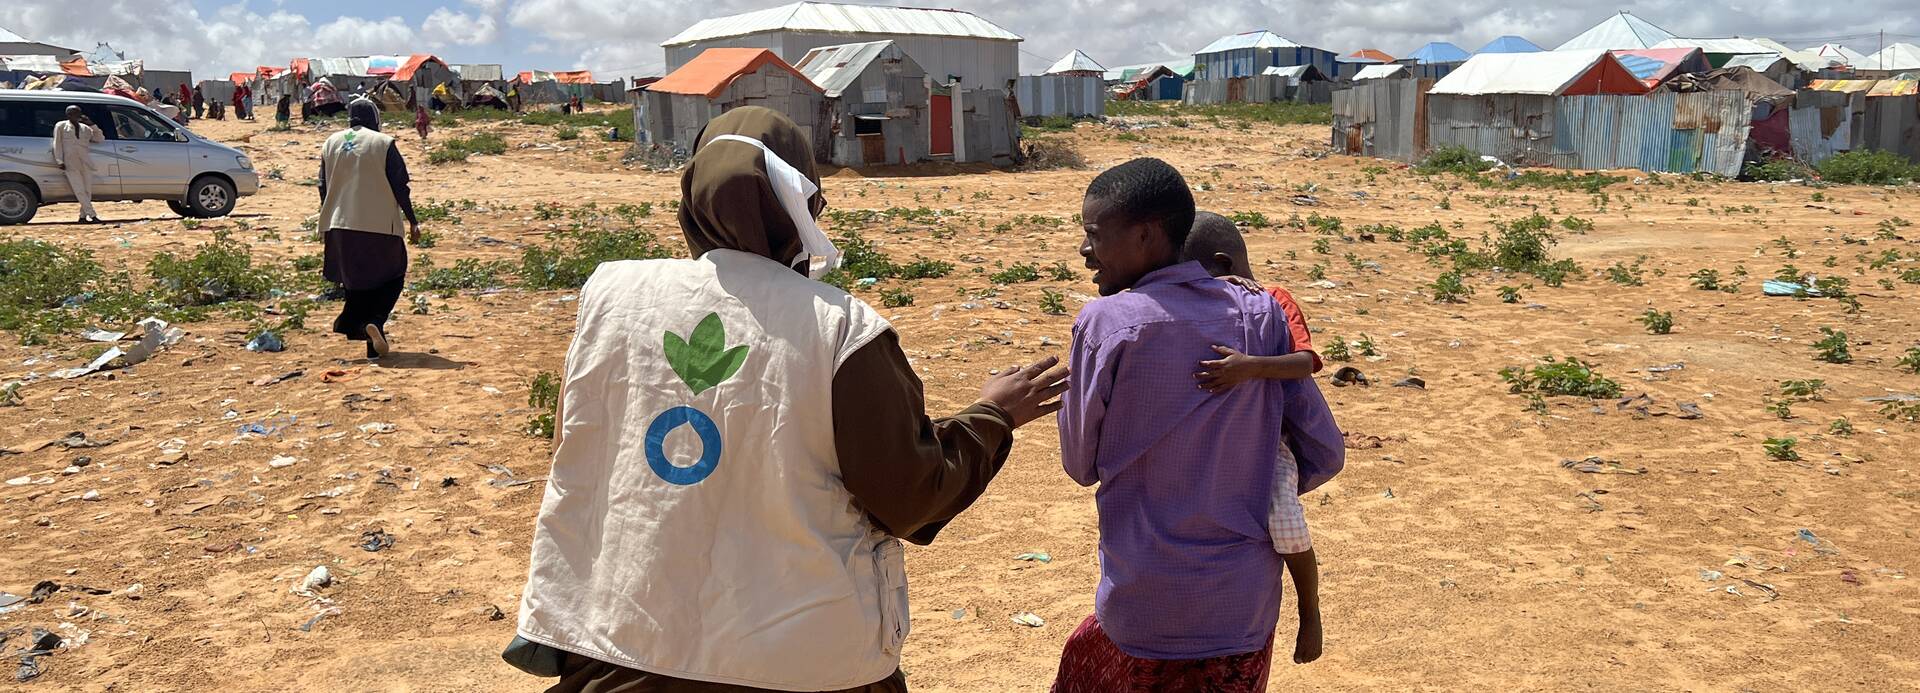 Eine Mitarbeiterin von Aktion gegen den Hunger in Somalia begleitet einen Vater mit Kind auf dem Arm durch ein Camp.